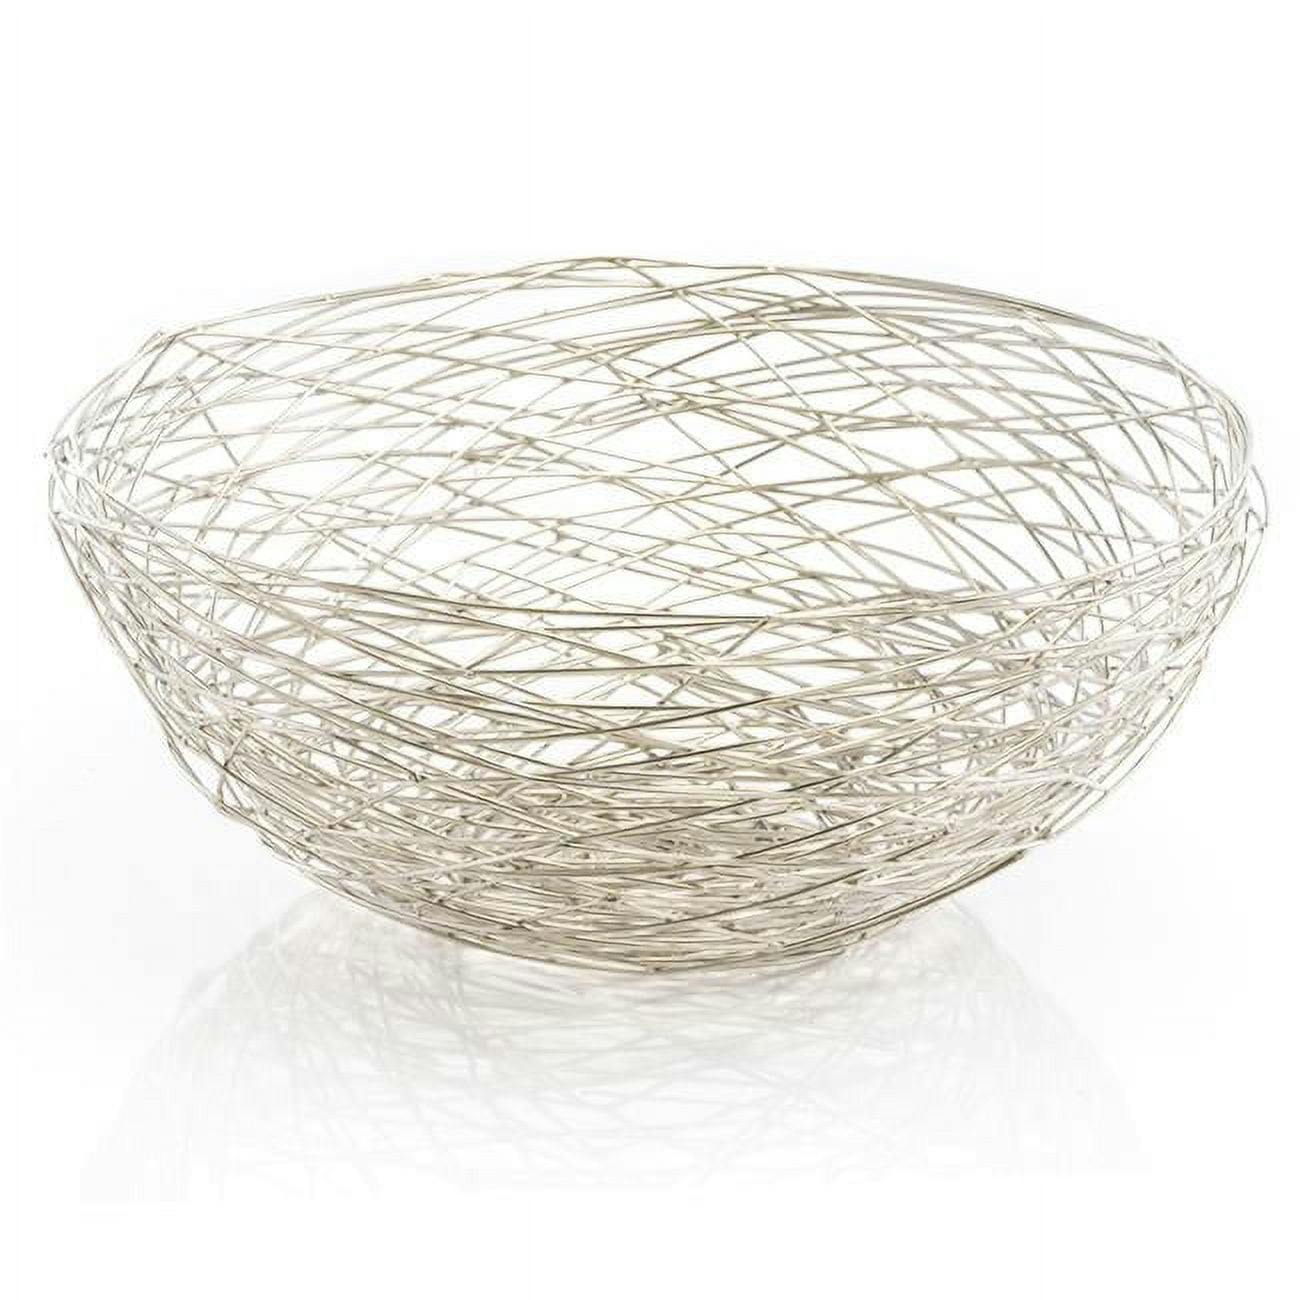 Elegant Silver Iron Wire 12oz Round Fruit Bowl